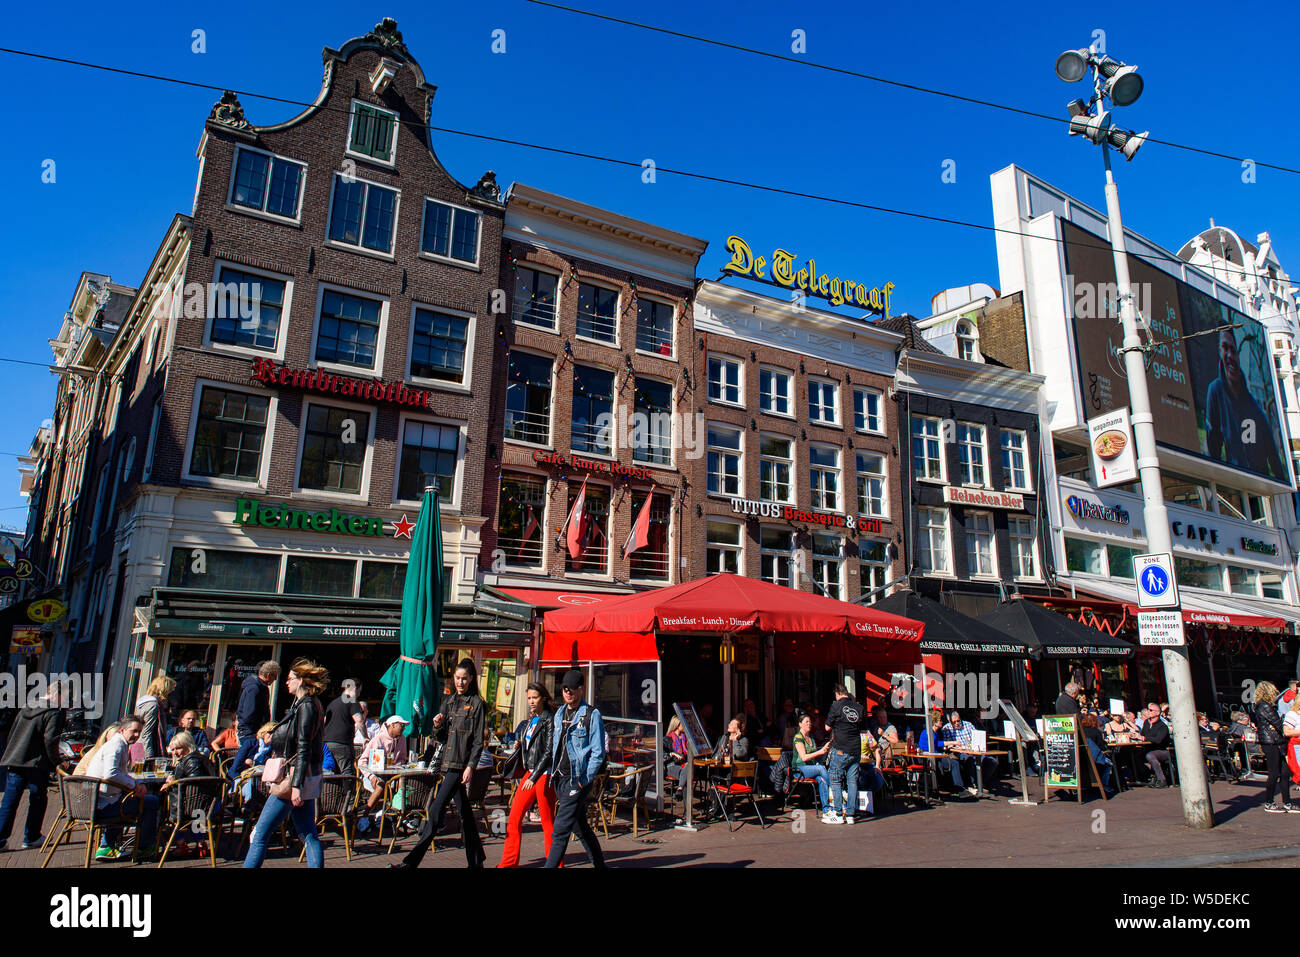 Place Rembrandtplein à Amsterdam, Pays-Bas Banque D'Images